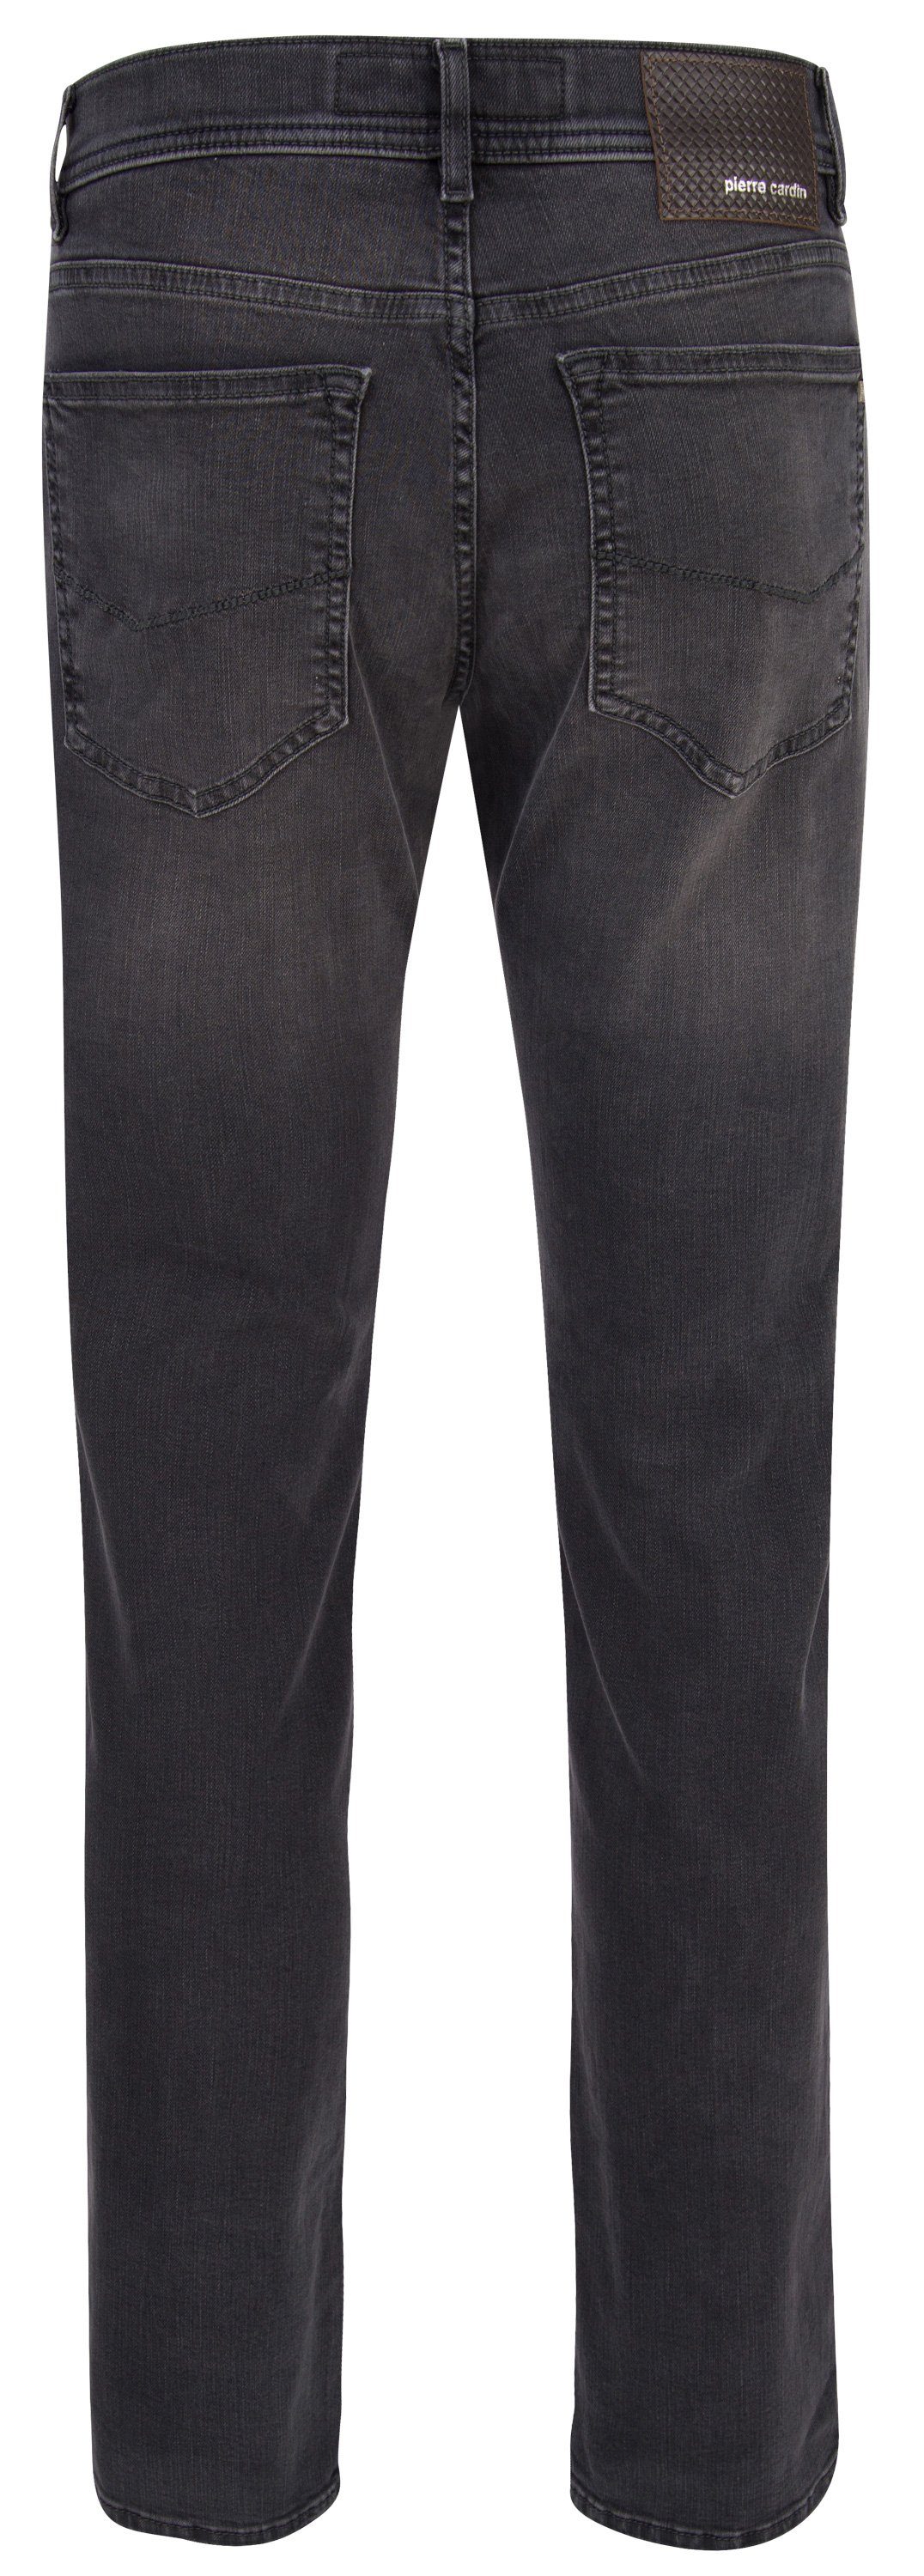 30915 VOYAGE 5-Pocket-Jeans CARDIN 7711.01 grey LYON - Cardin dark Pierre used PIERRE